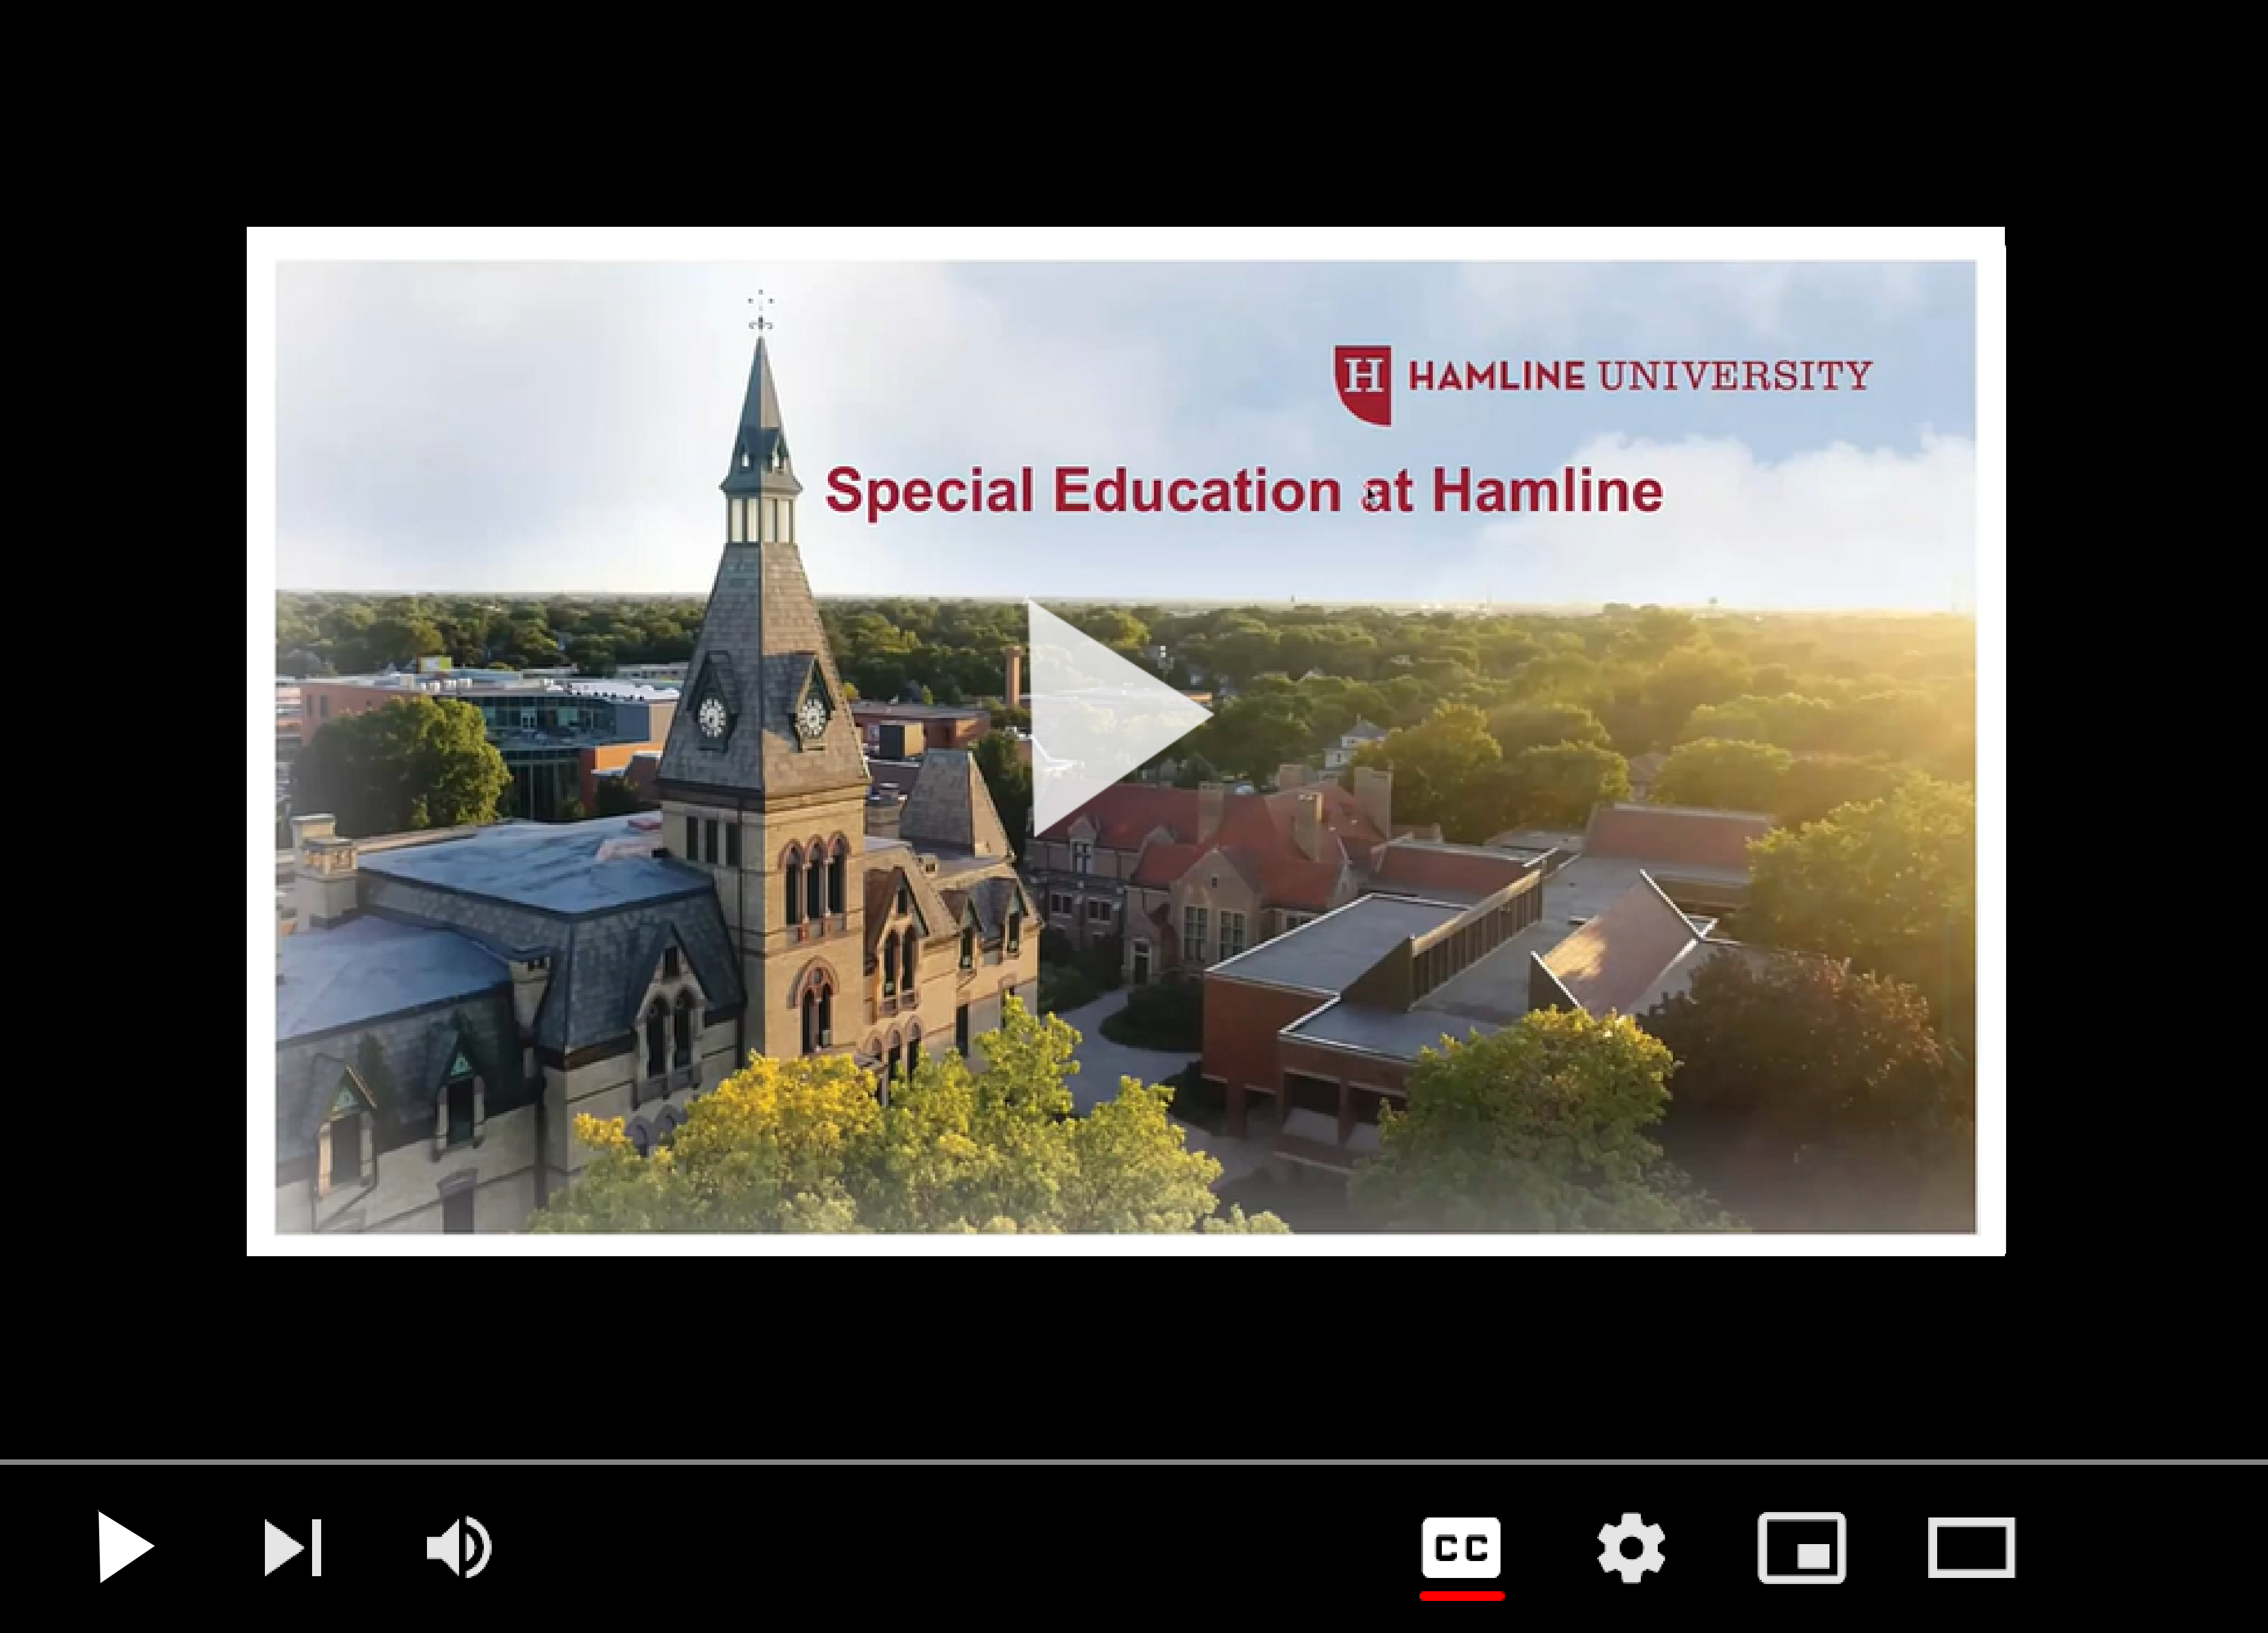 Special Education at Hamline University